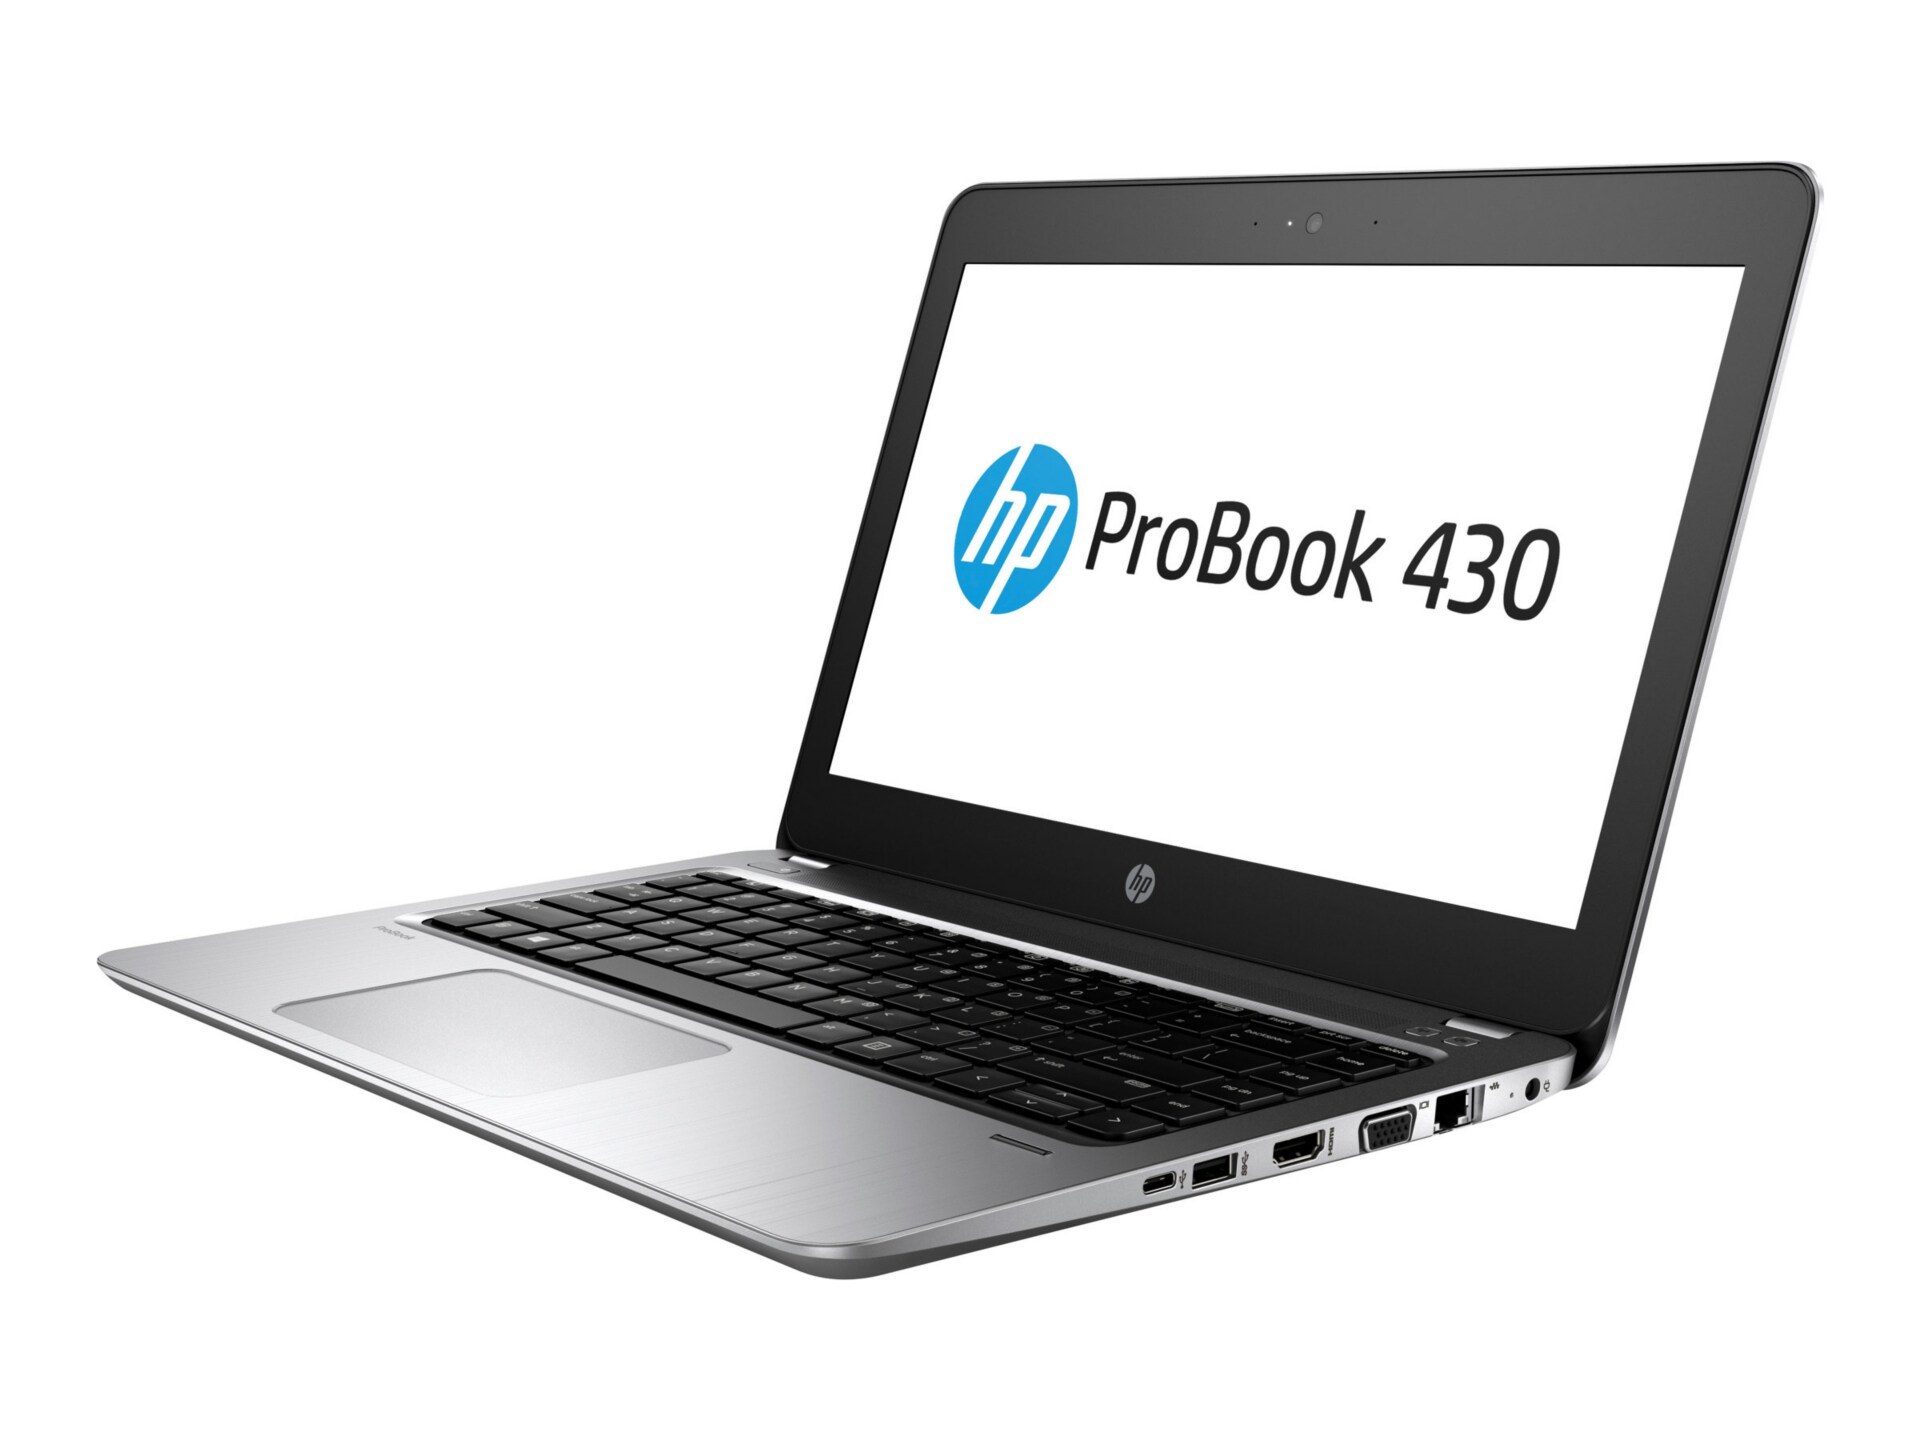 HP ProBook 430 G4 - 13.3" - Core i3 7100U - 4 GB RAM - 500 GB HDD - US